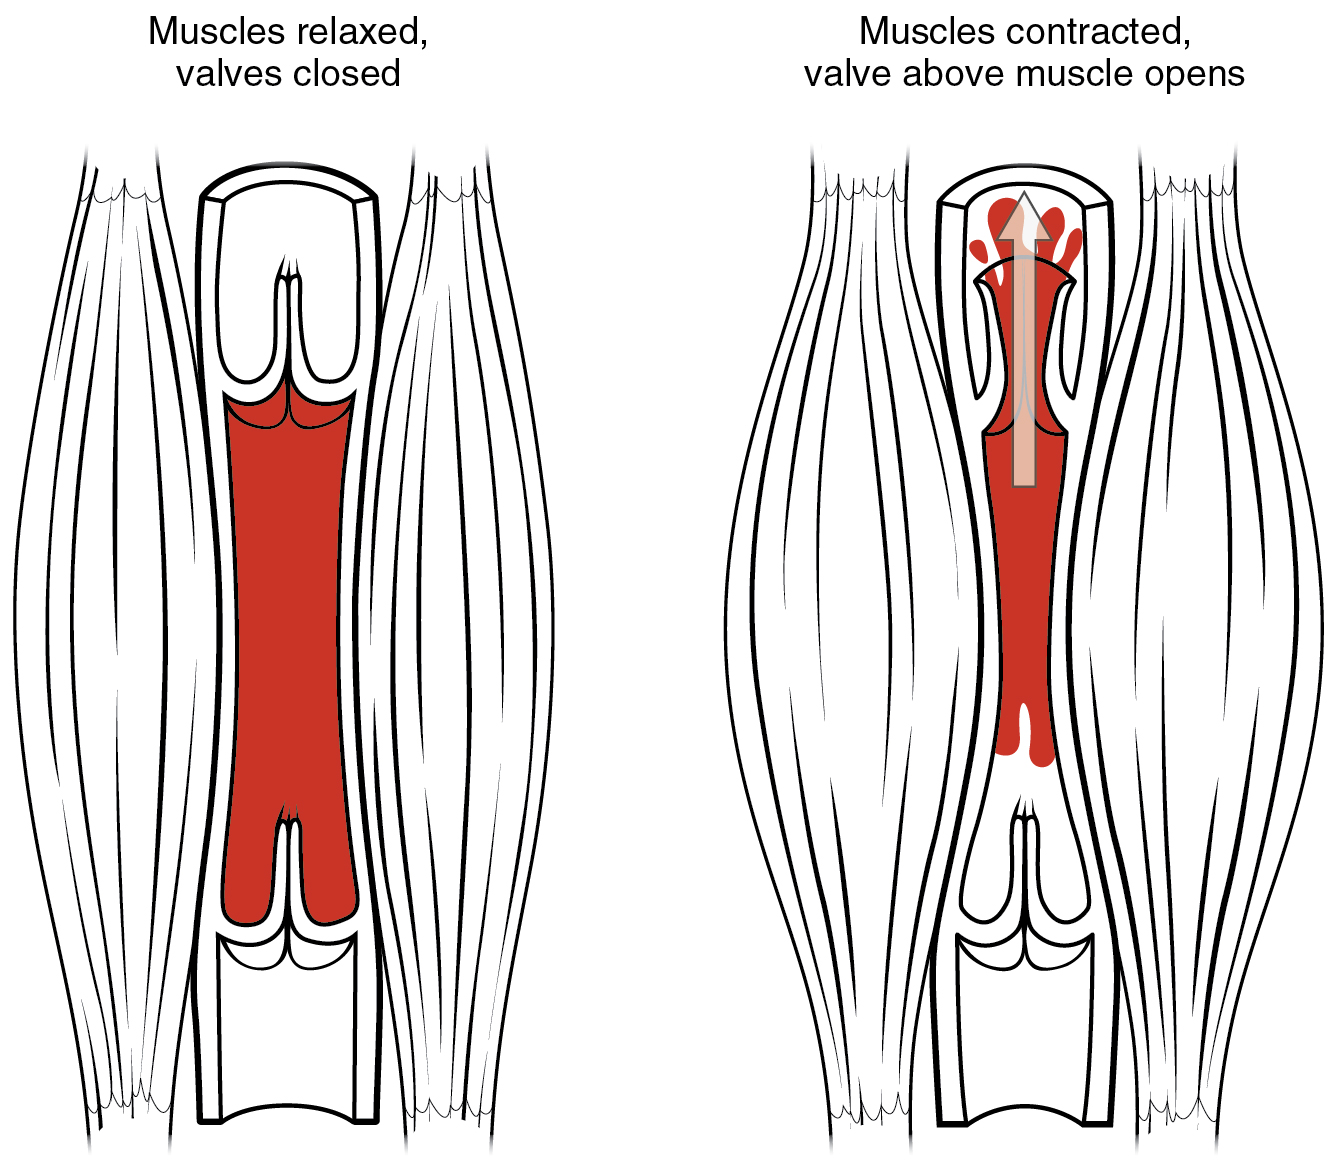 O painel esquerdo mostra a estrutura de uma bomba de veia muscular esquelética quando o músculo está relaxado, e o painel direito mostra a estrutura de uma bomba de veia muscular esquelética quando o músculo é contraído.